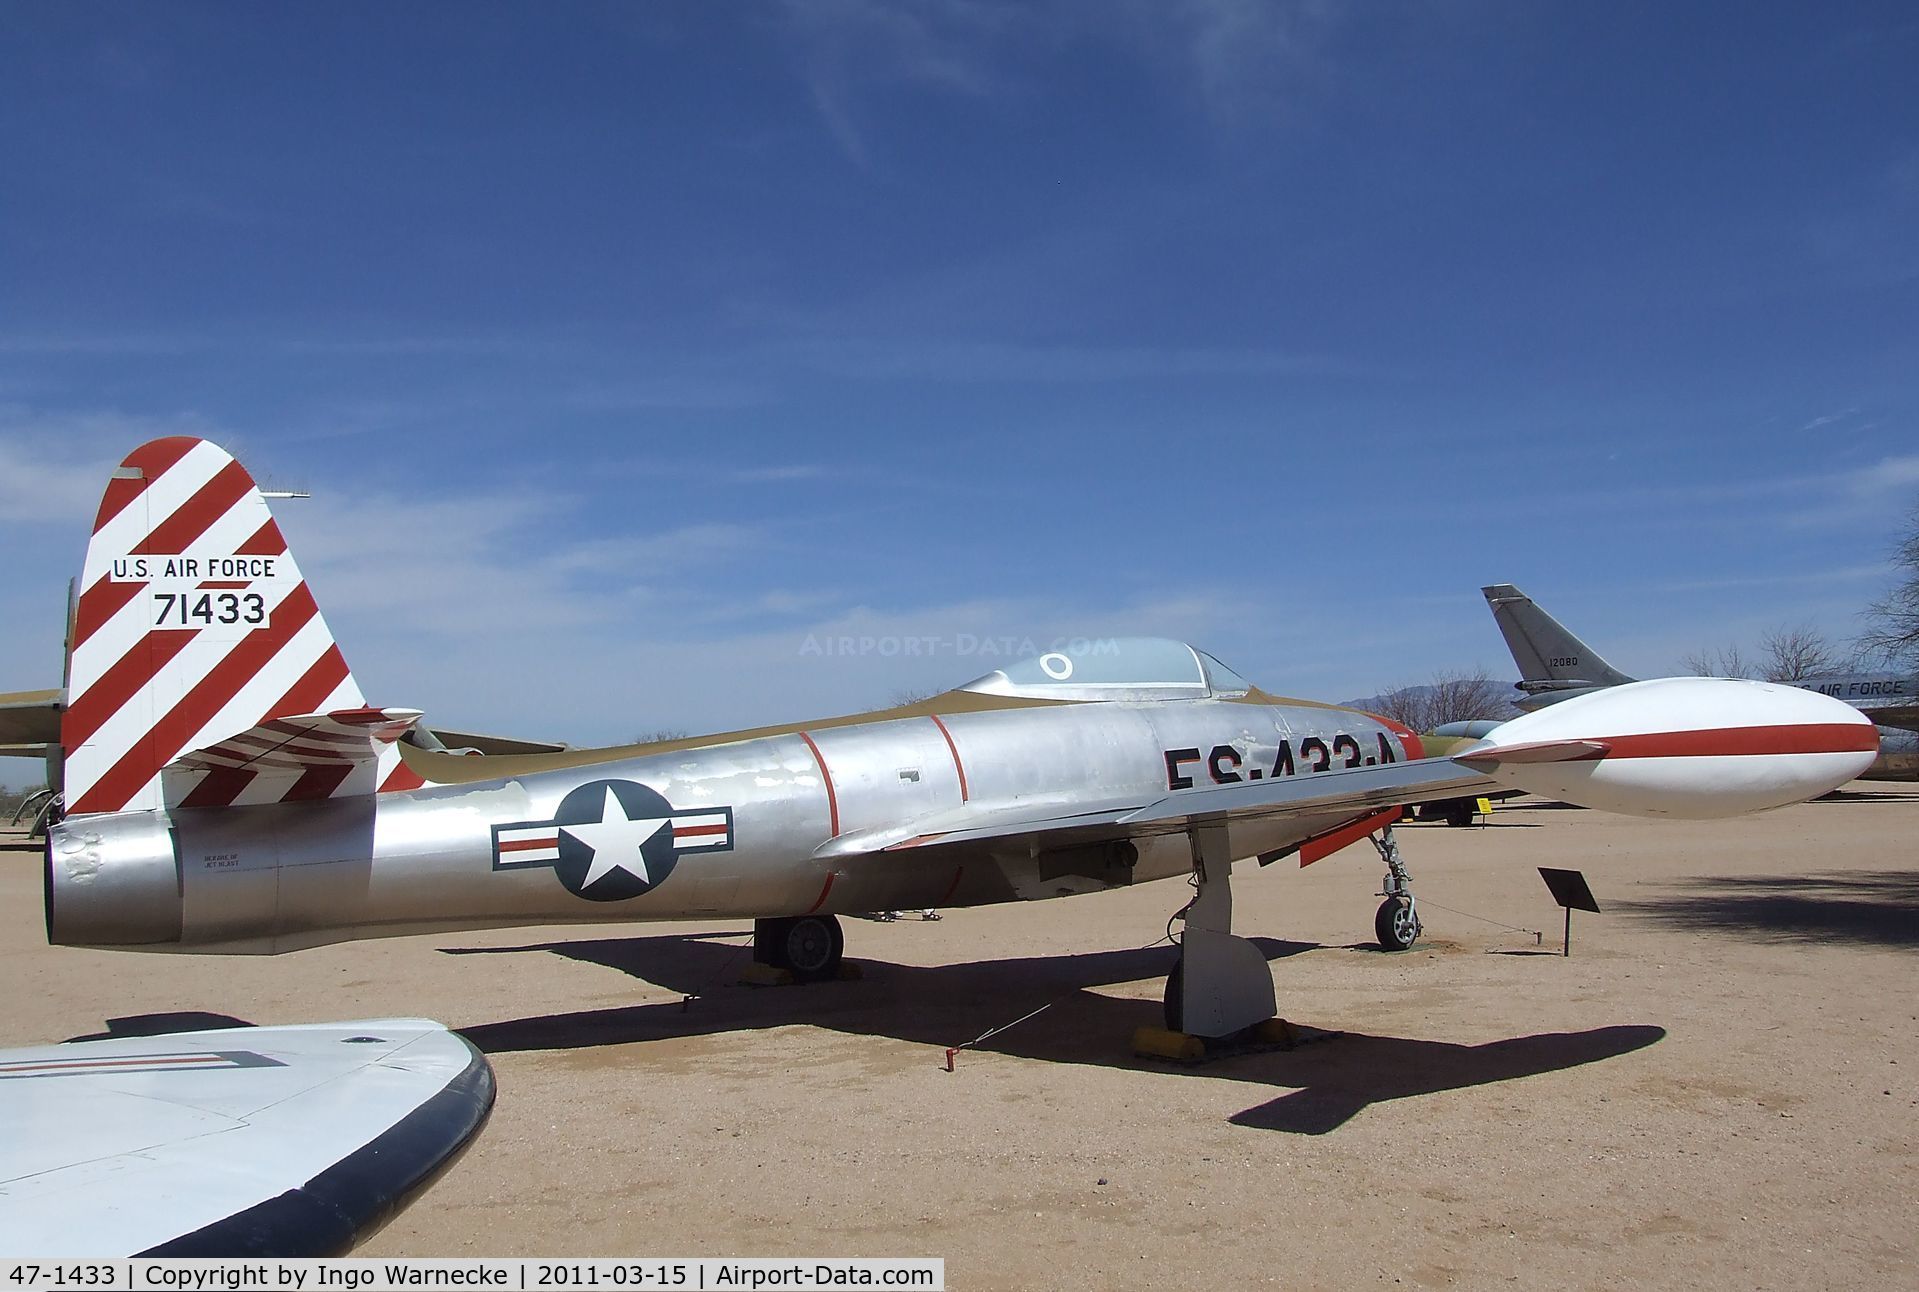 47-1433, 1947 Republic F-84C-2-RE Thunderjet C/N Not found 47-1433, Republic F-84C Thunderjet at the Pima Air & Space Museum, Tucson AZ